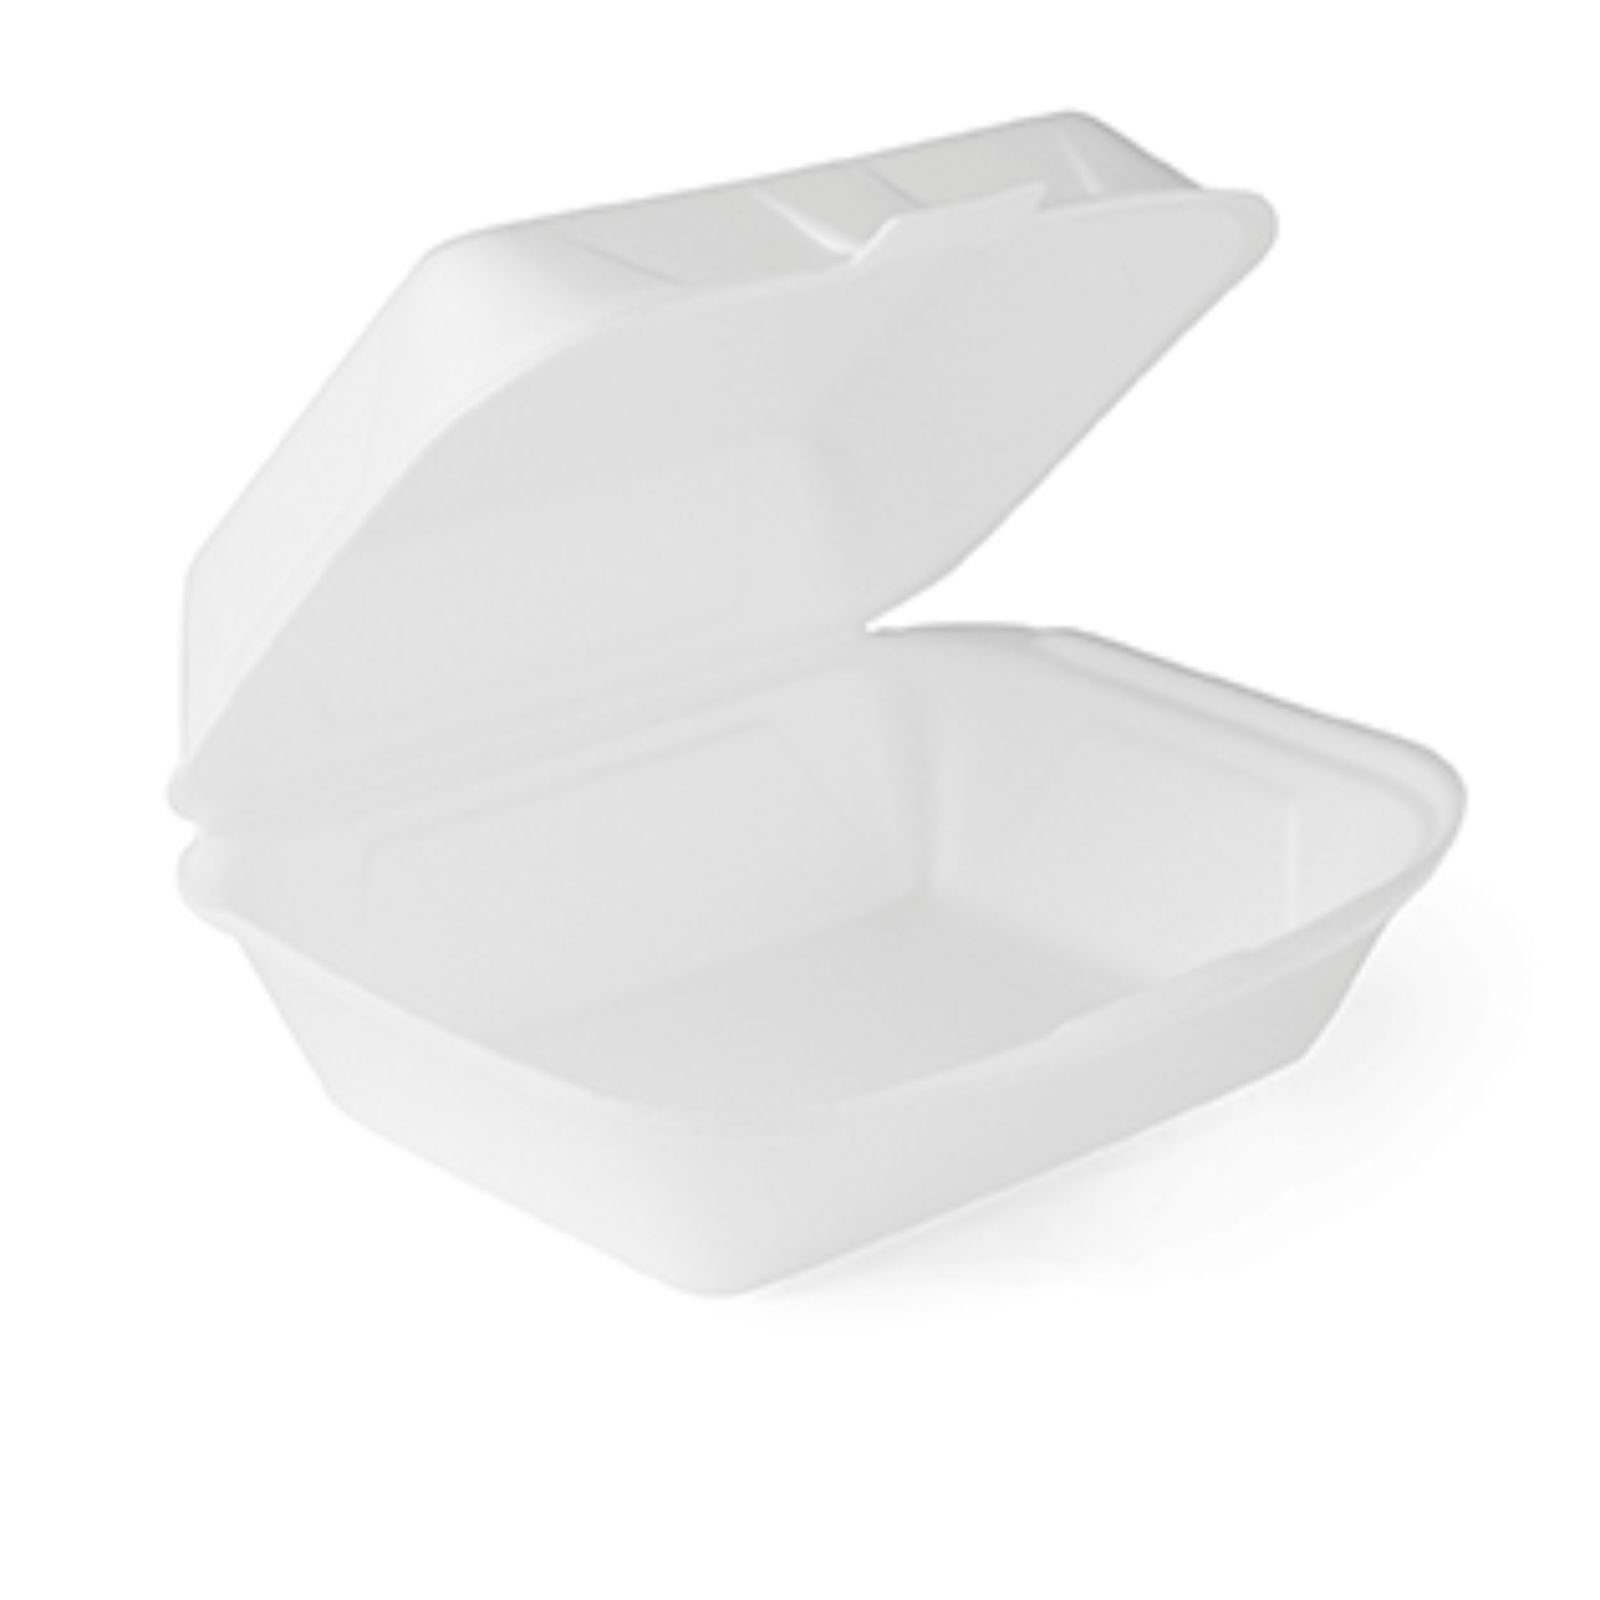 niedrigster Preis online Lunchbox 500 Stück weiß Lunchboxen XPS Thermo Menübox, IP9, Menüschale hitzebeständig bis 90°C